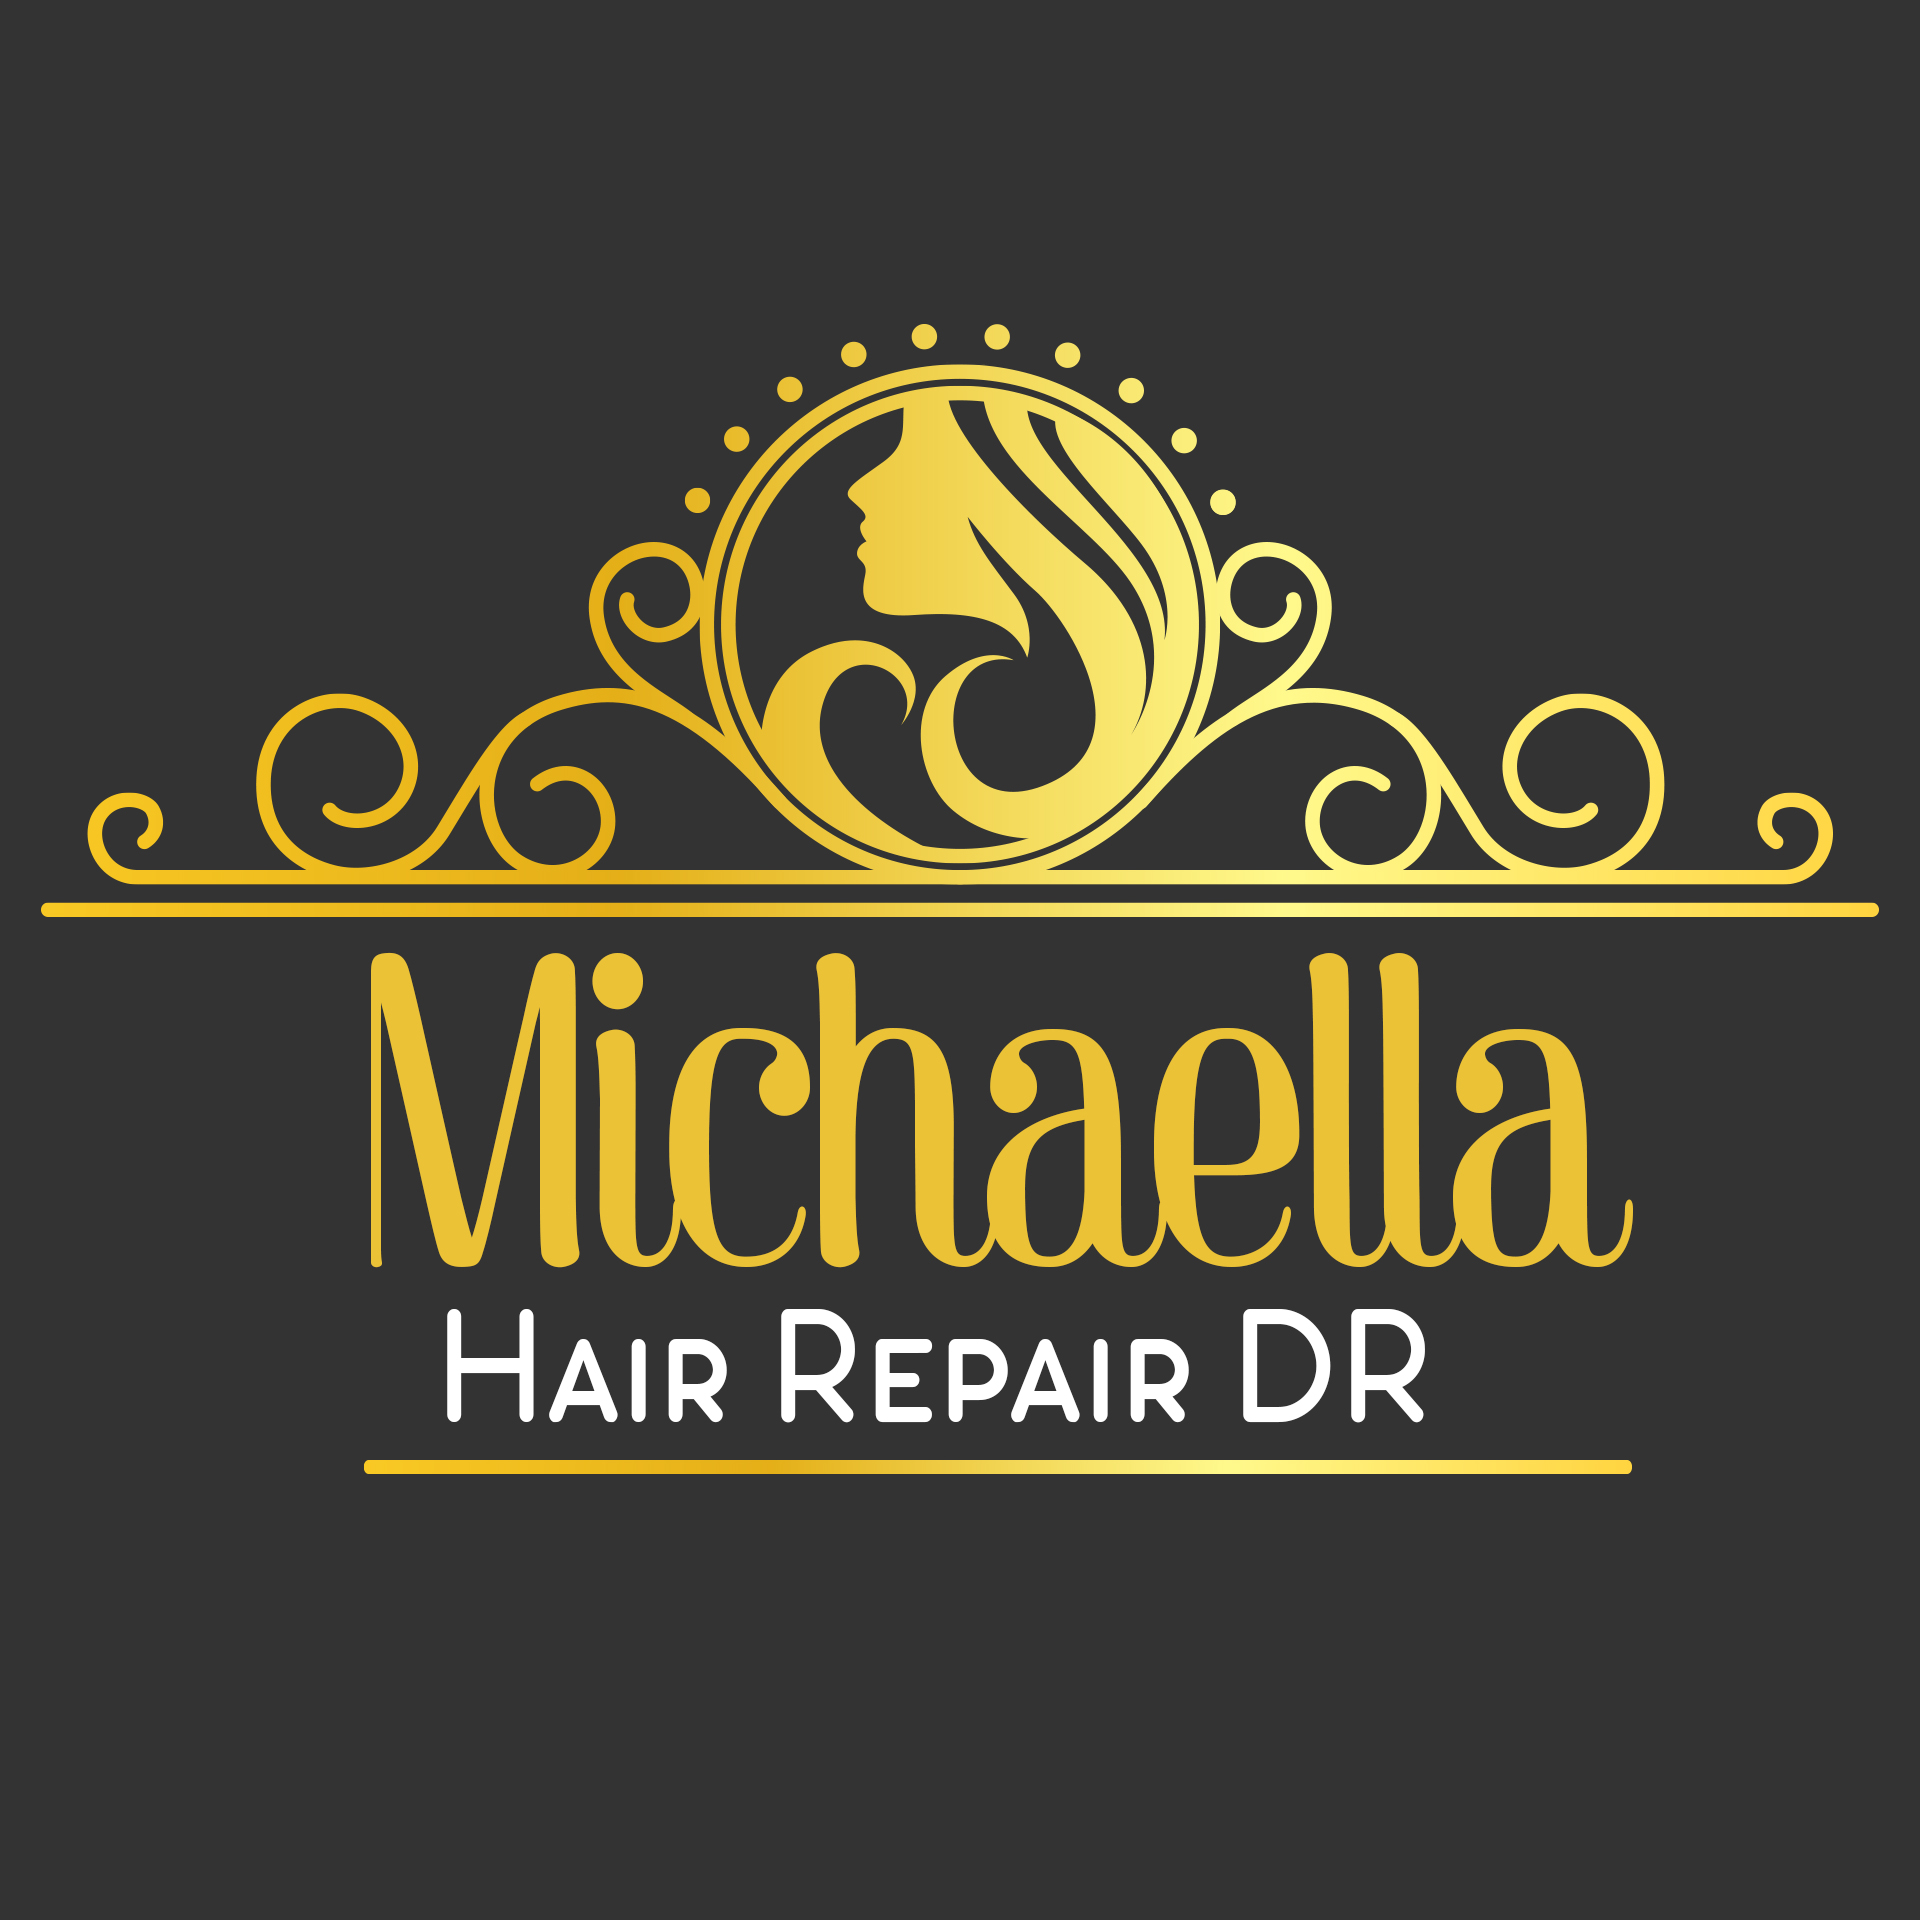 Hair-repair-DR-located-inside-expression-salon-logo.jpg